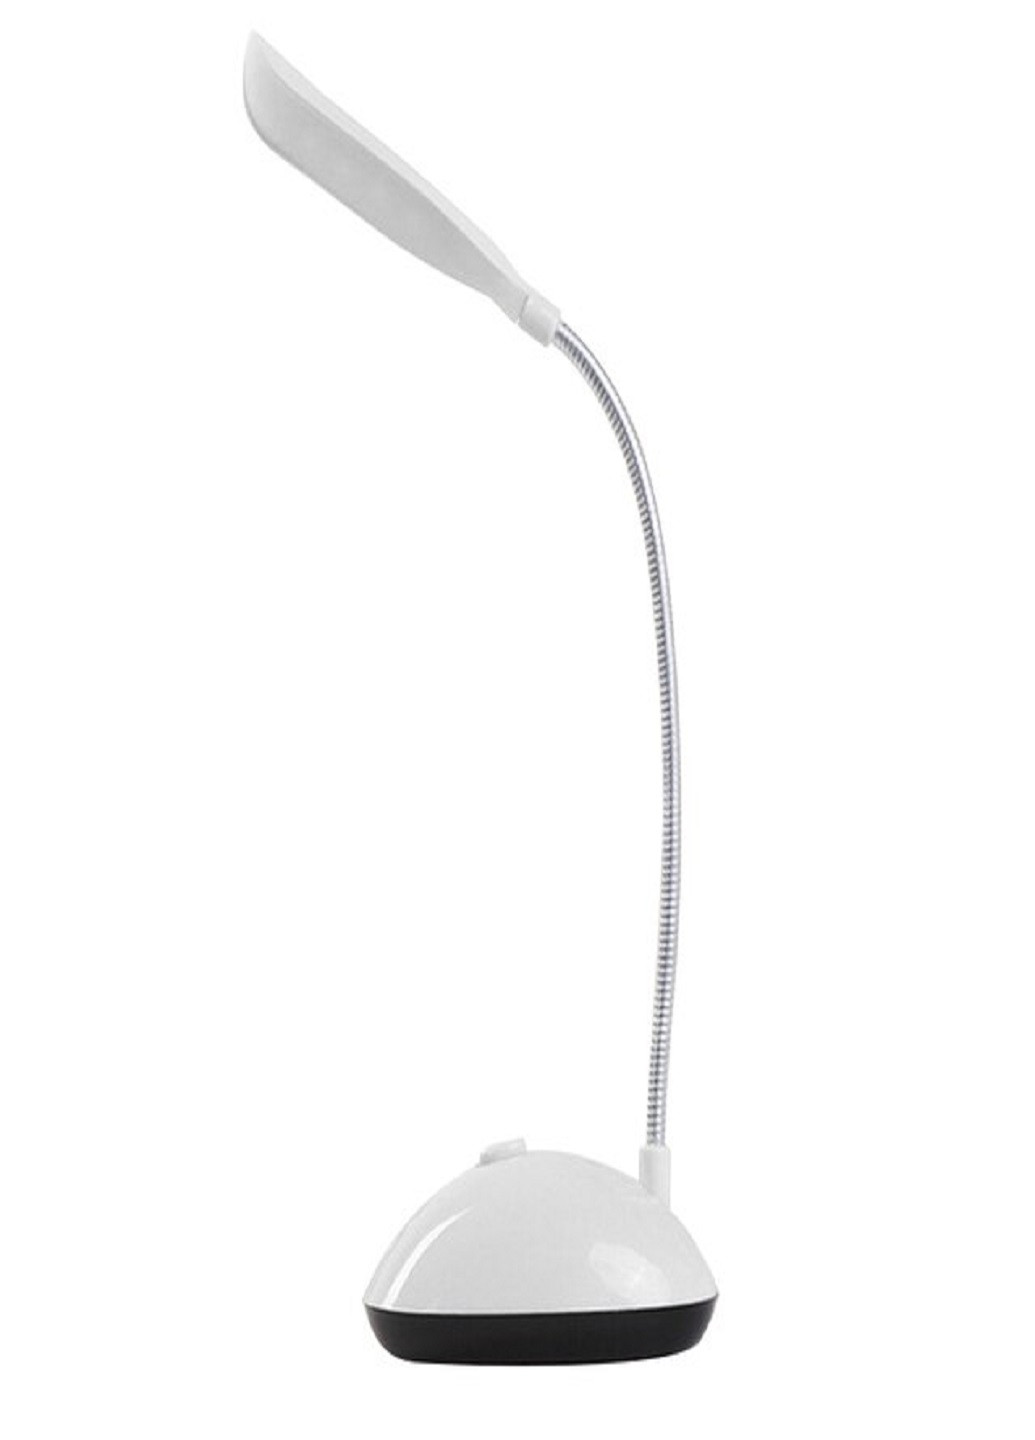 Настольная мини LED лампа на батарейках OZS светильник портативный 20см Белая VTech белая